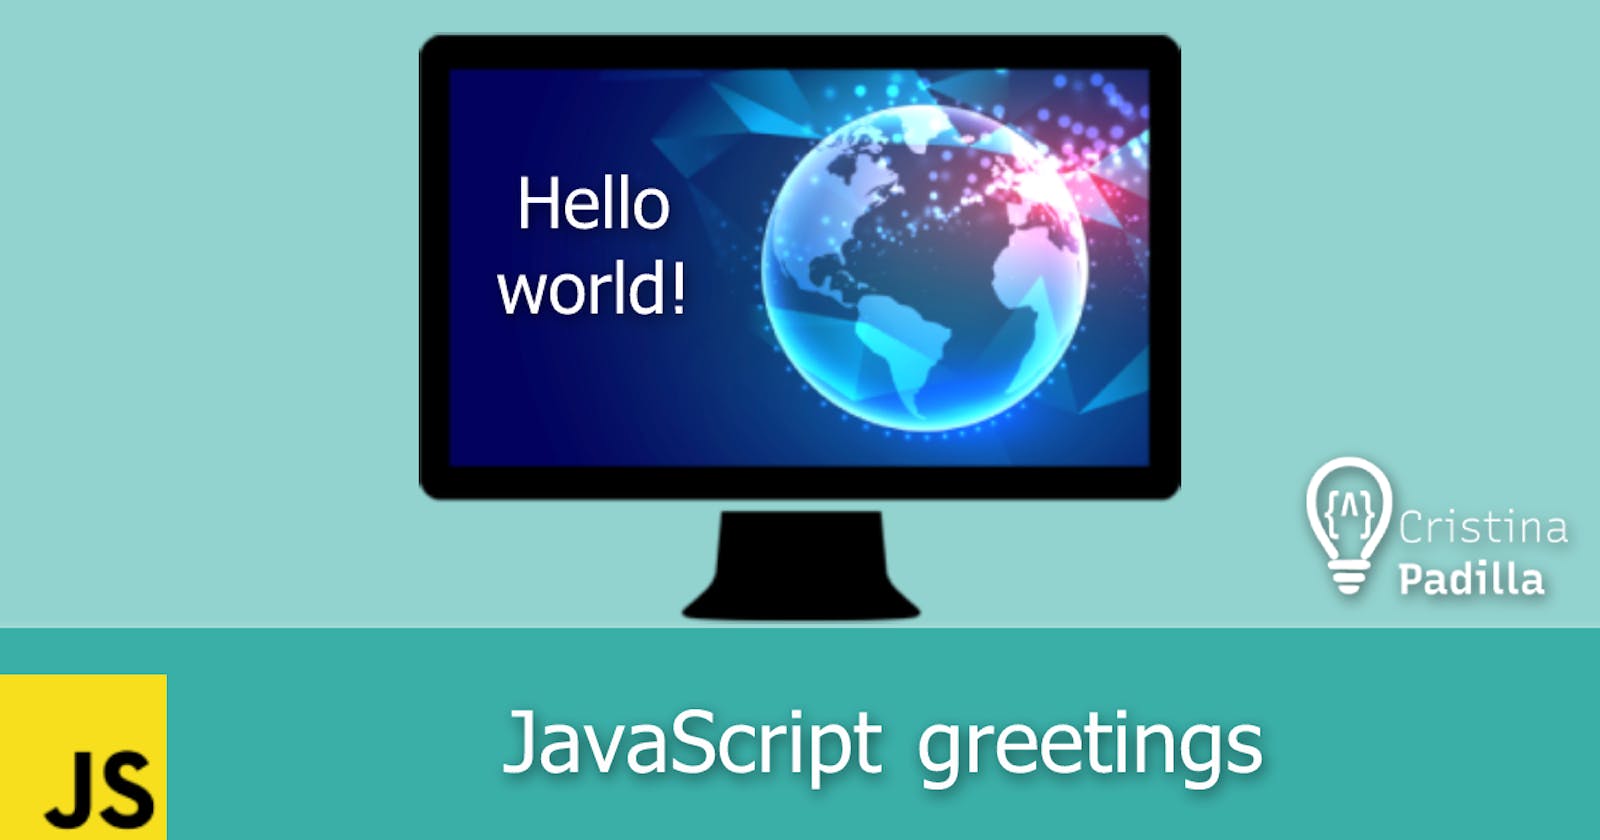 JavaScript greetings: Hello World!